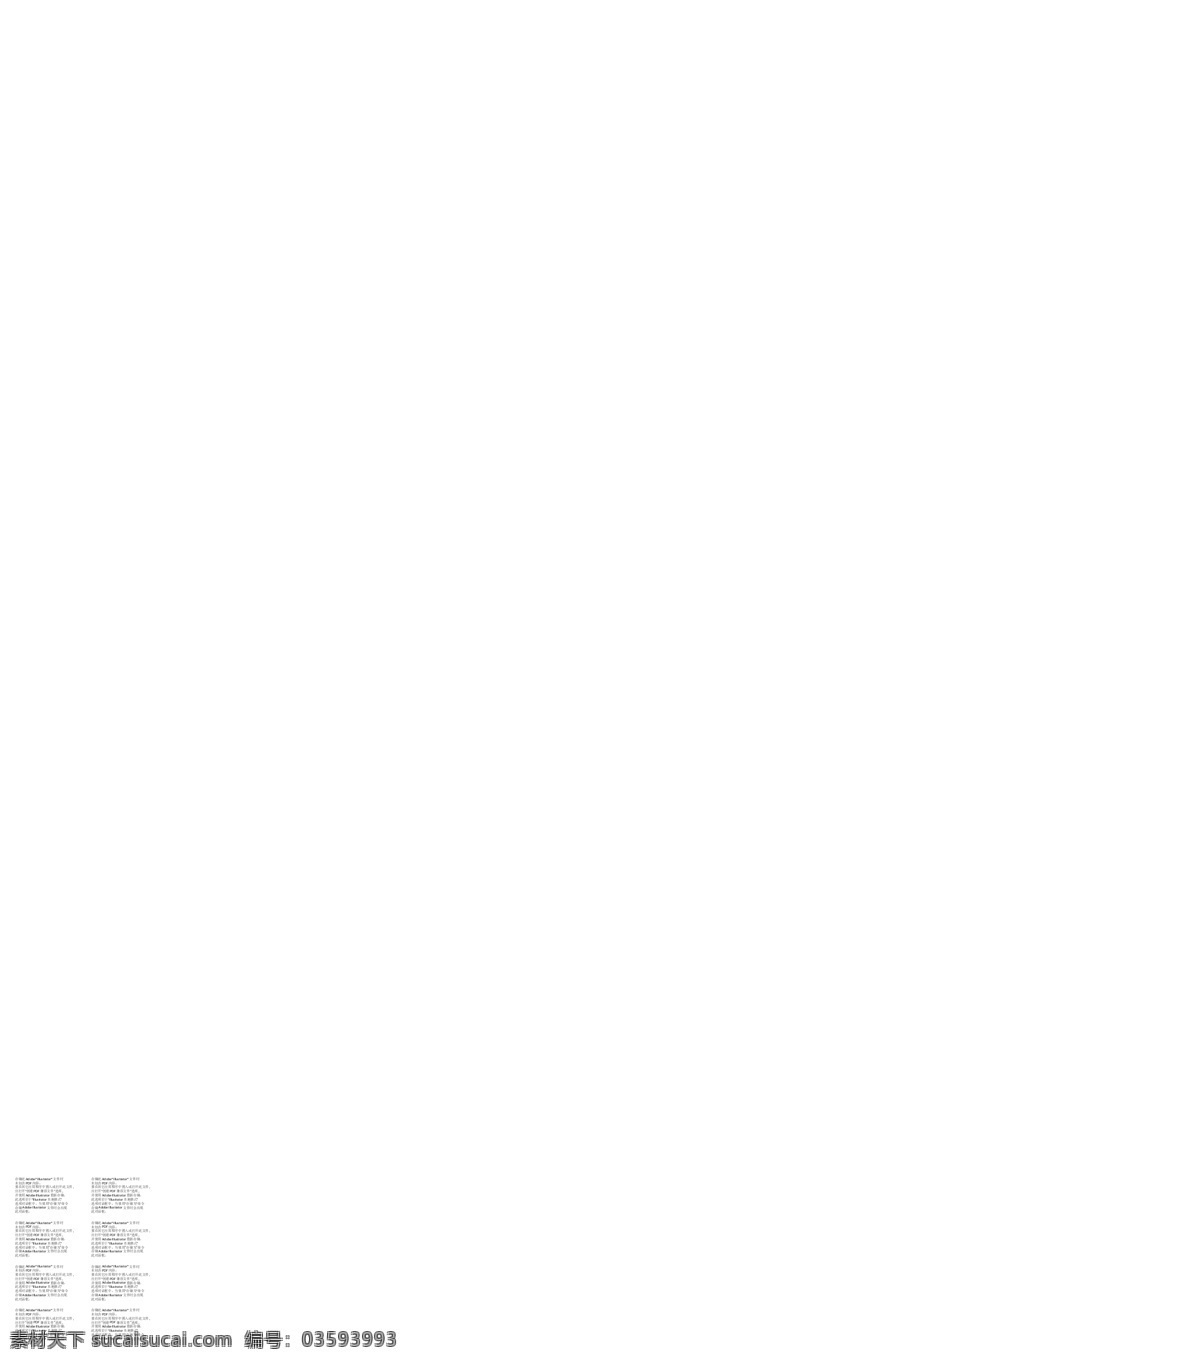 永 辉 超市 活动 宣传 永辉超市 永辉logo 活动宣传 宣传版面 宣传车 燃烧吧 艺术字 年中庆 电风扇 矿泉水 礼盒 小素材 星星 红色系 展板 海报 源文件 矢量素材 展板模板